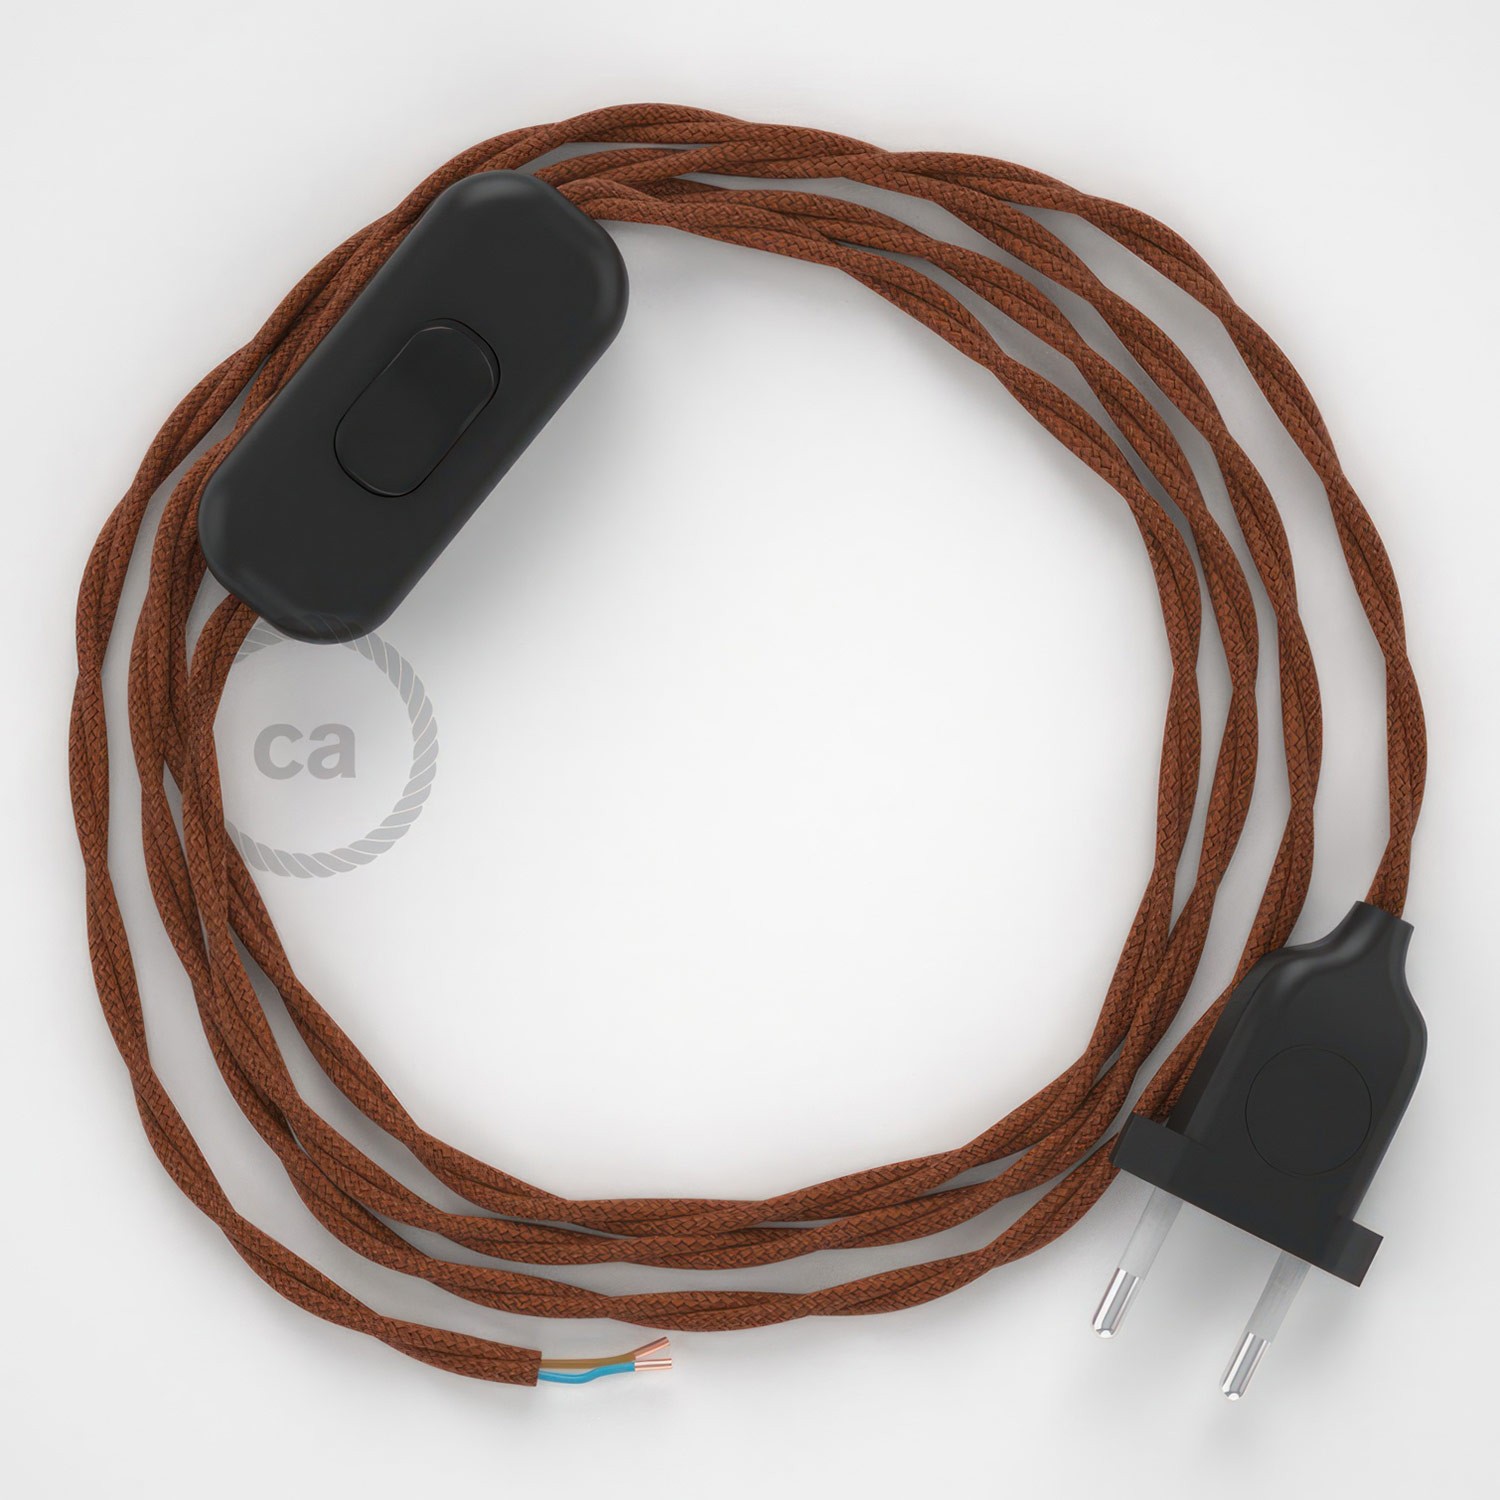 Cableado para lámpara, cable TC23 Algodón Ciervo 1,8m. Elige tu el color de la clavija y del interruptor!